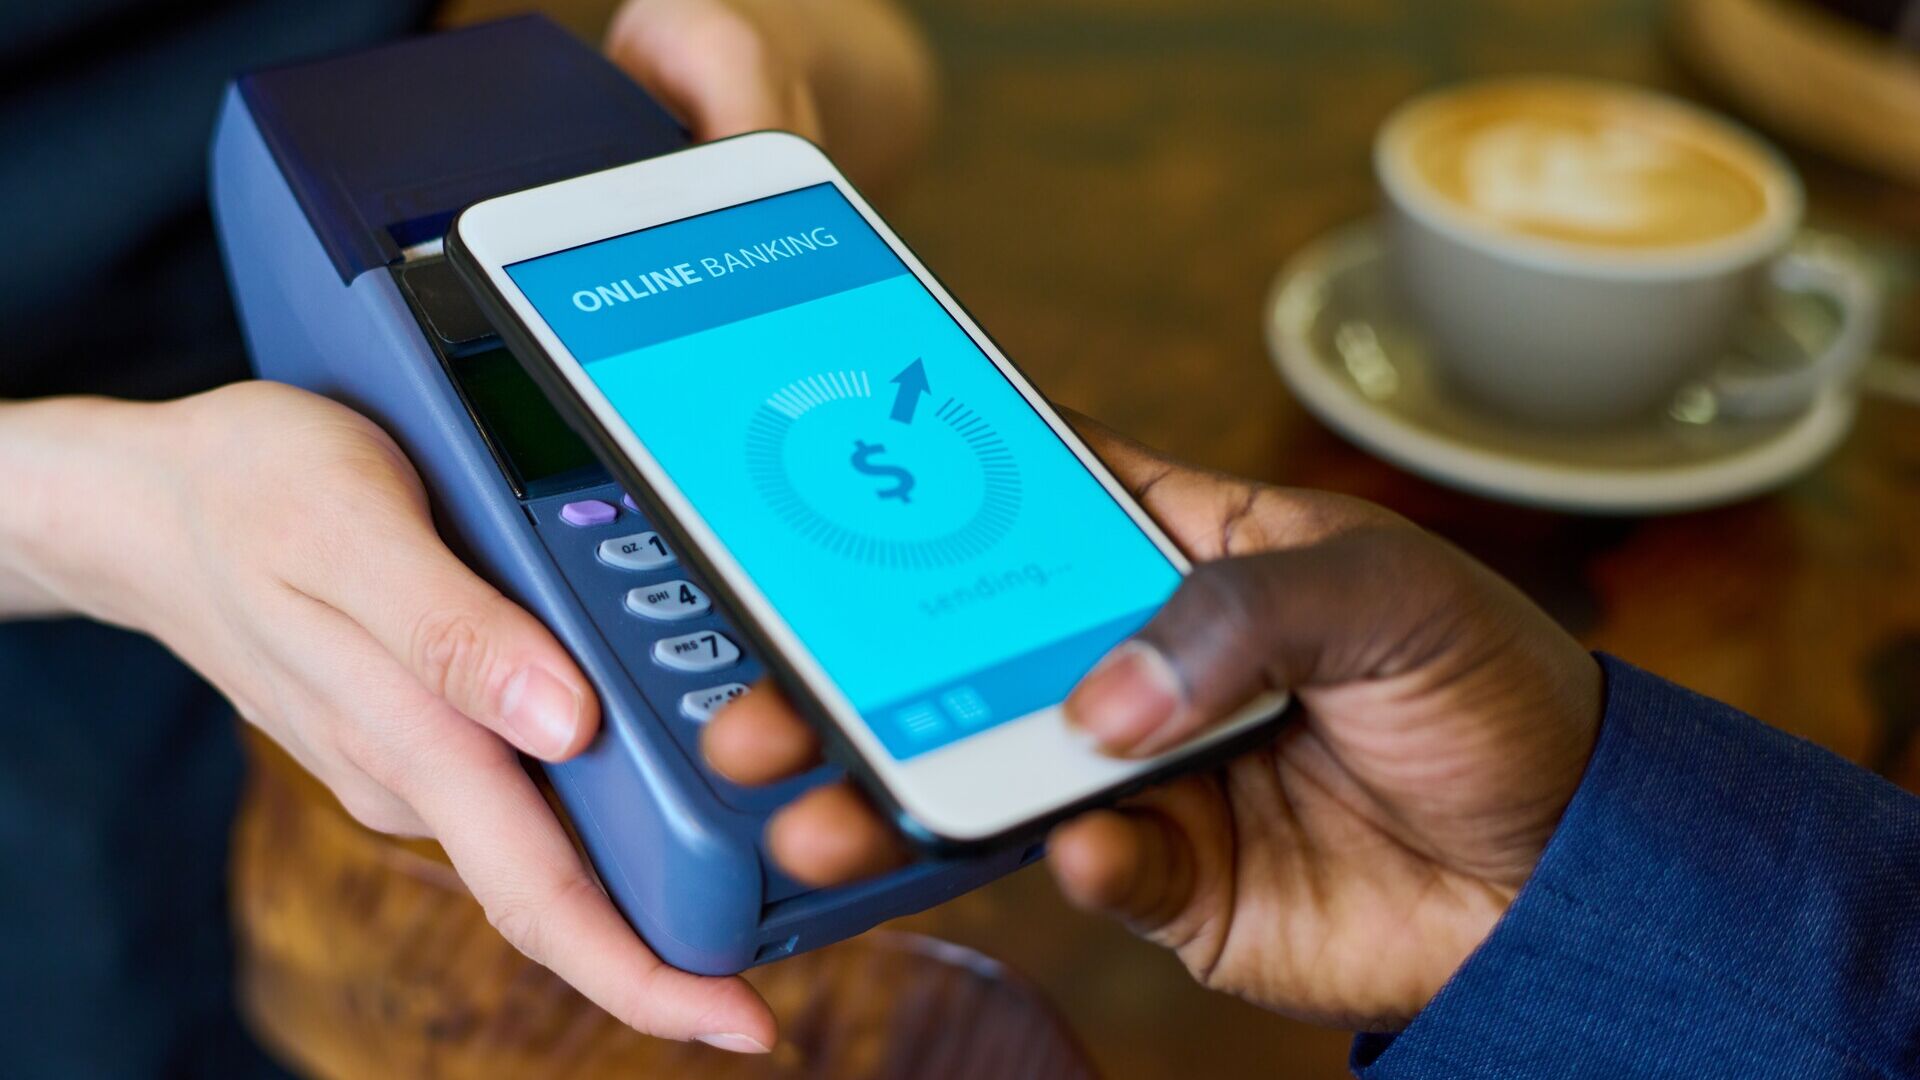 Pagamenti da mobile: i vantaggi del mobile payment sono la comodità, la rapidità e le caratteristiche di sicurezza aggiuntive, come le impronte digitali o il riconoscimento del volto